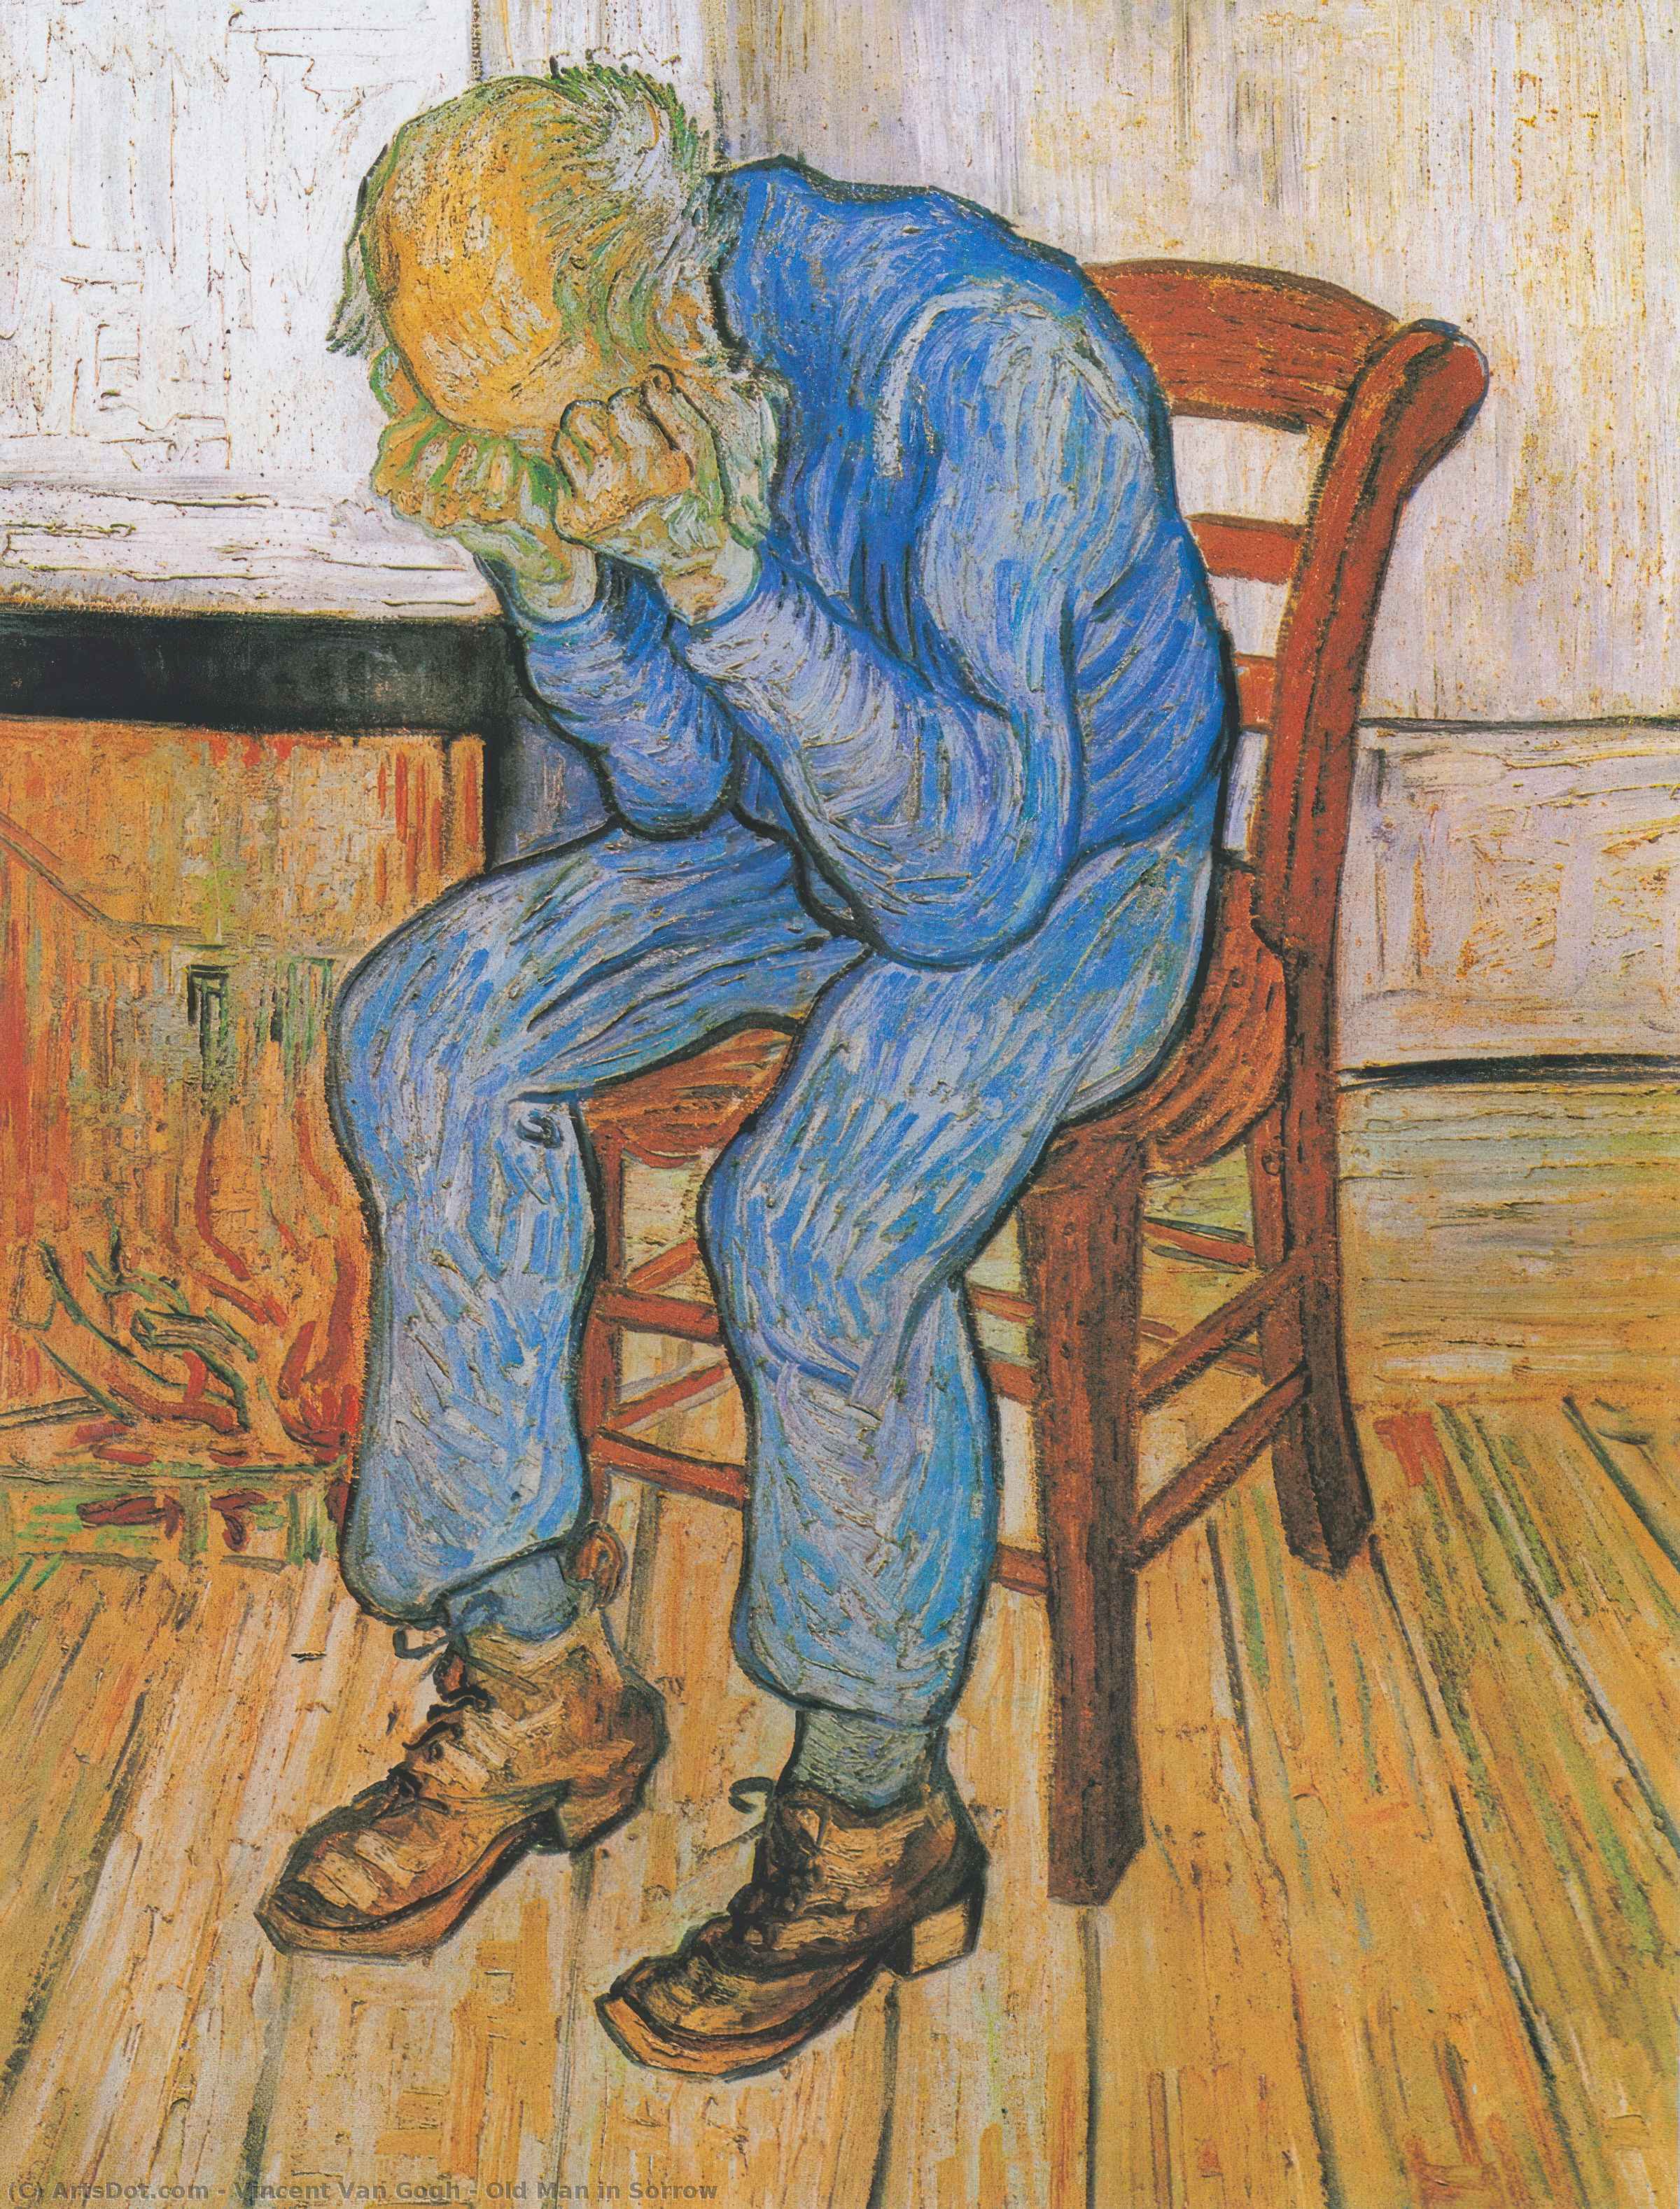 Achat Reproductions D'art Le vieil homme dans la douleur, 1890 de Vincent Van Gogh (1853-1890, Netherlands) | ArtsDot.com